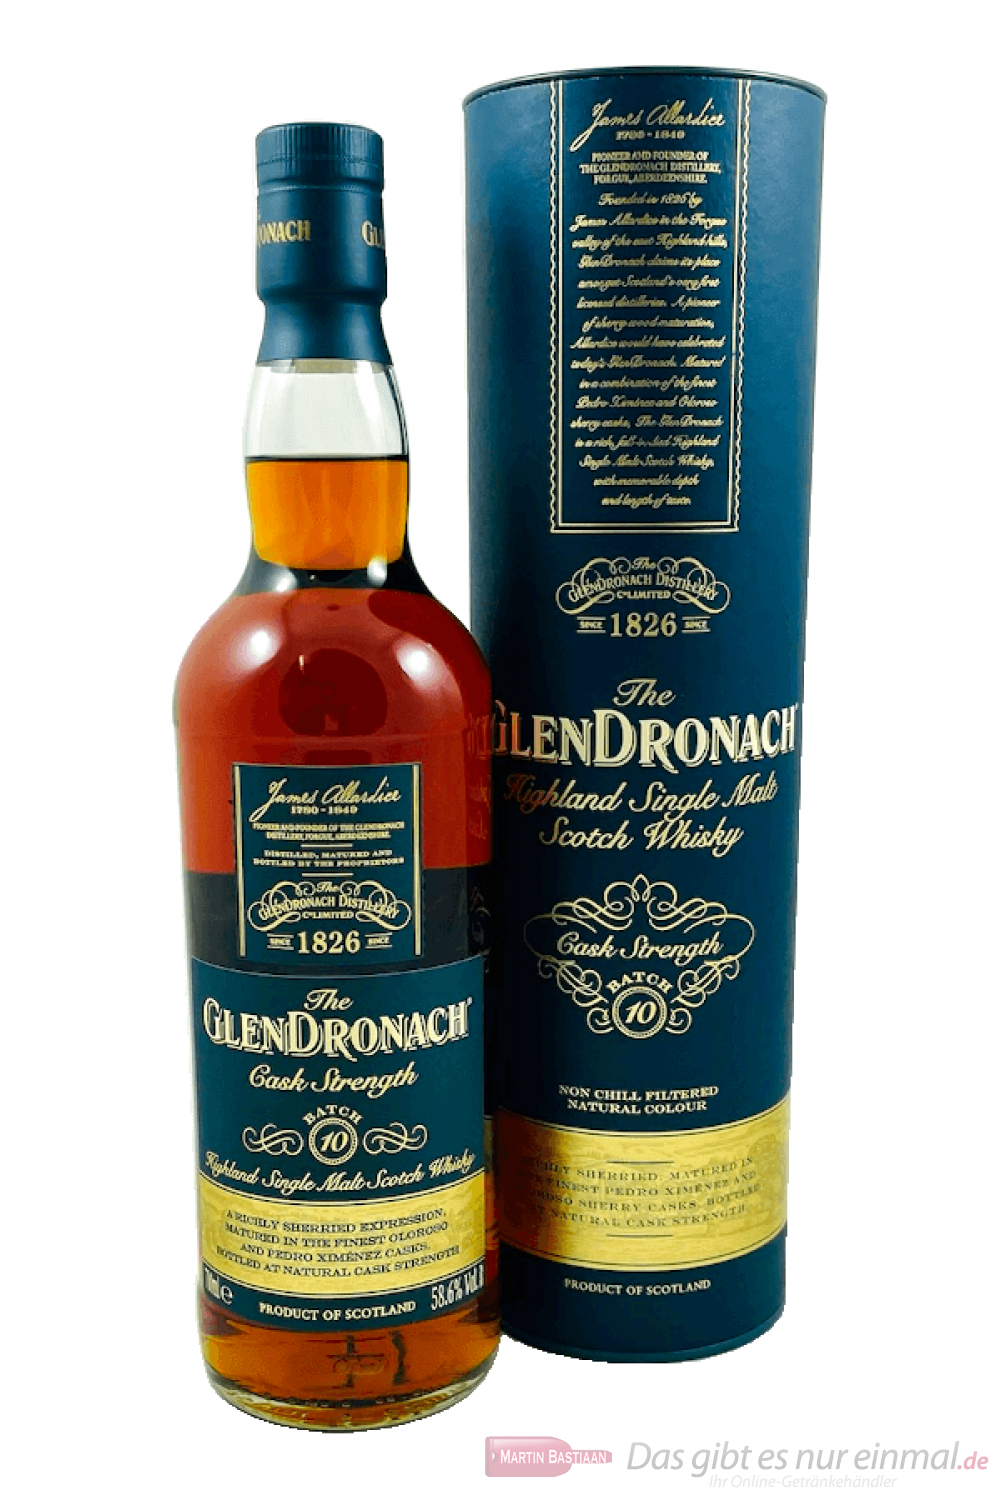 Glendronach Cask Strength Batch No. 10 Single Malt Scotch Whisky 0,7l